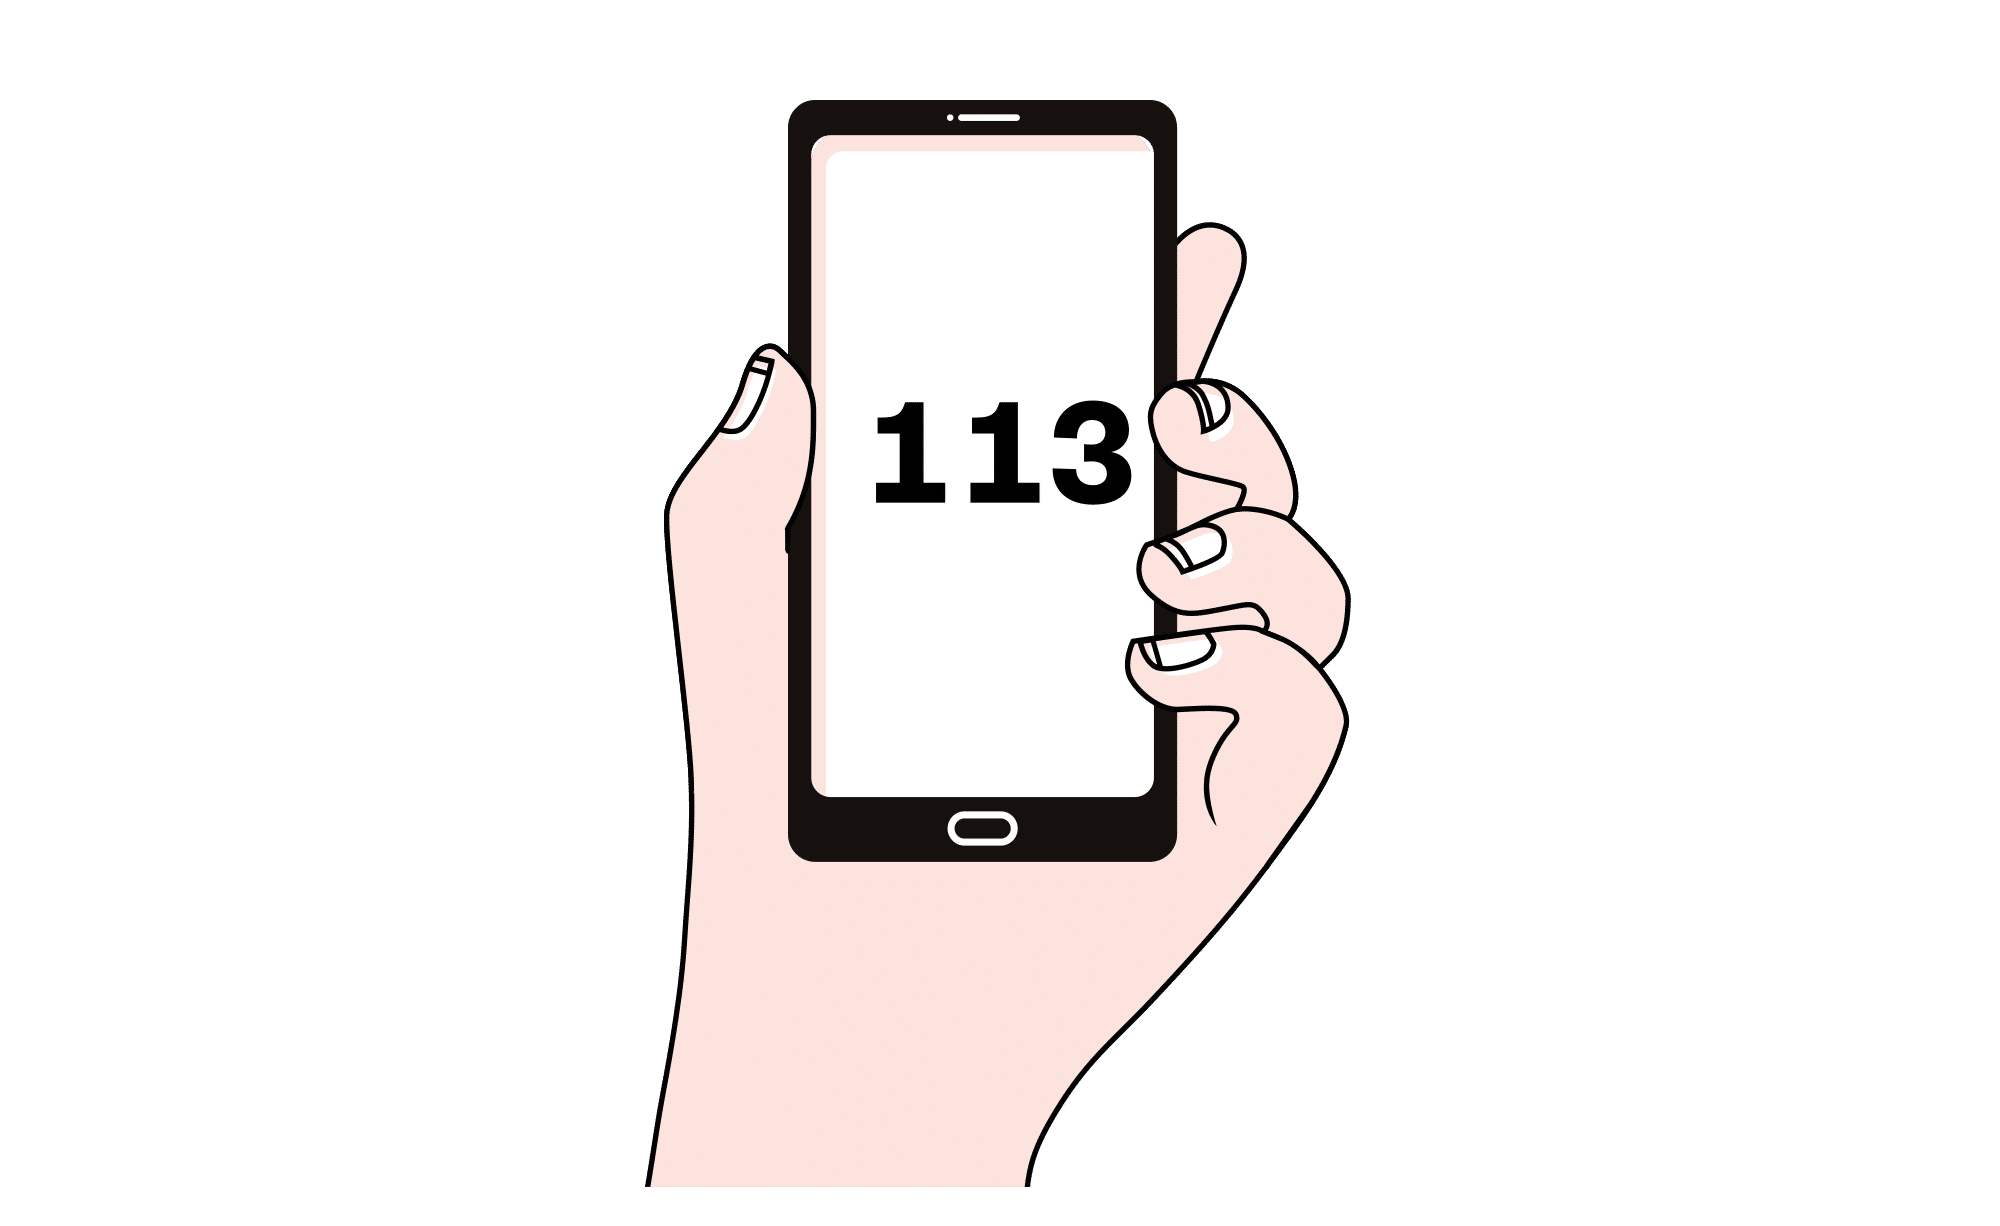 Illustrasjon av en hånd osm holder en mobil hvor det står 113